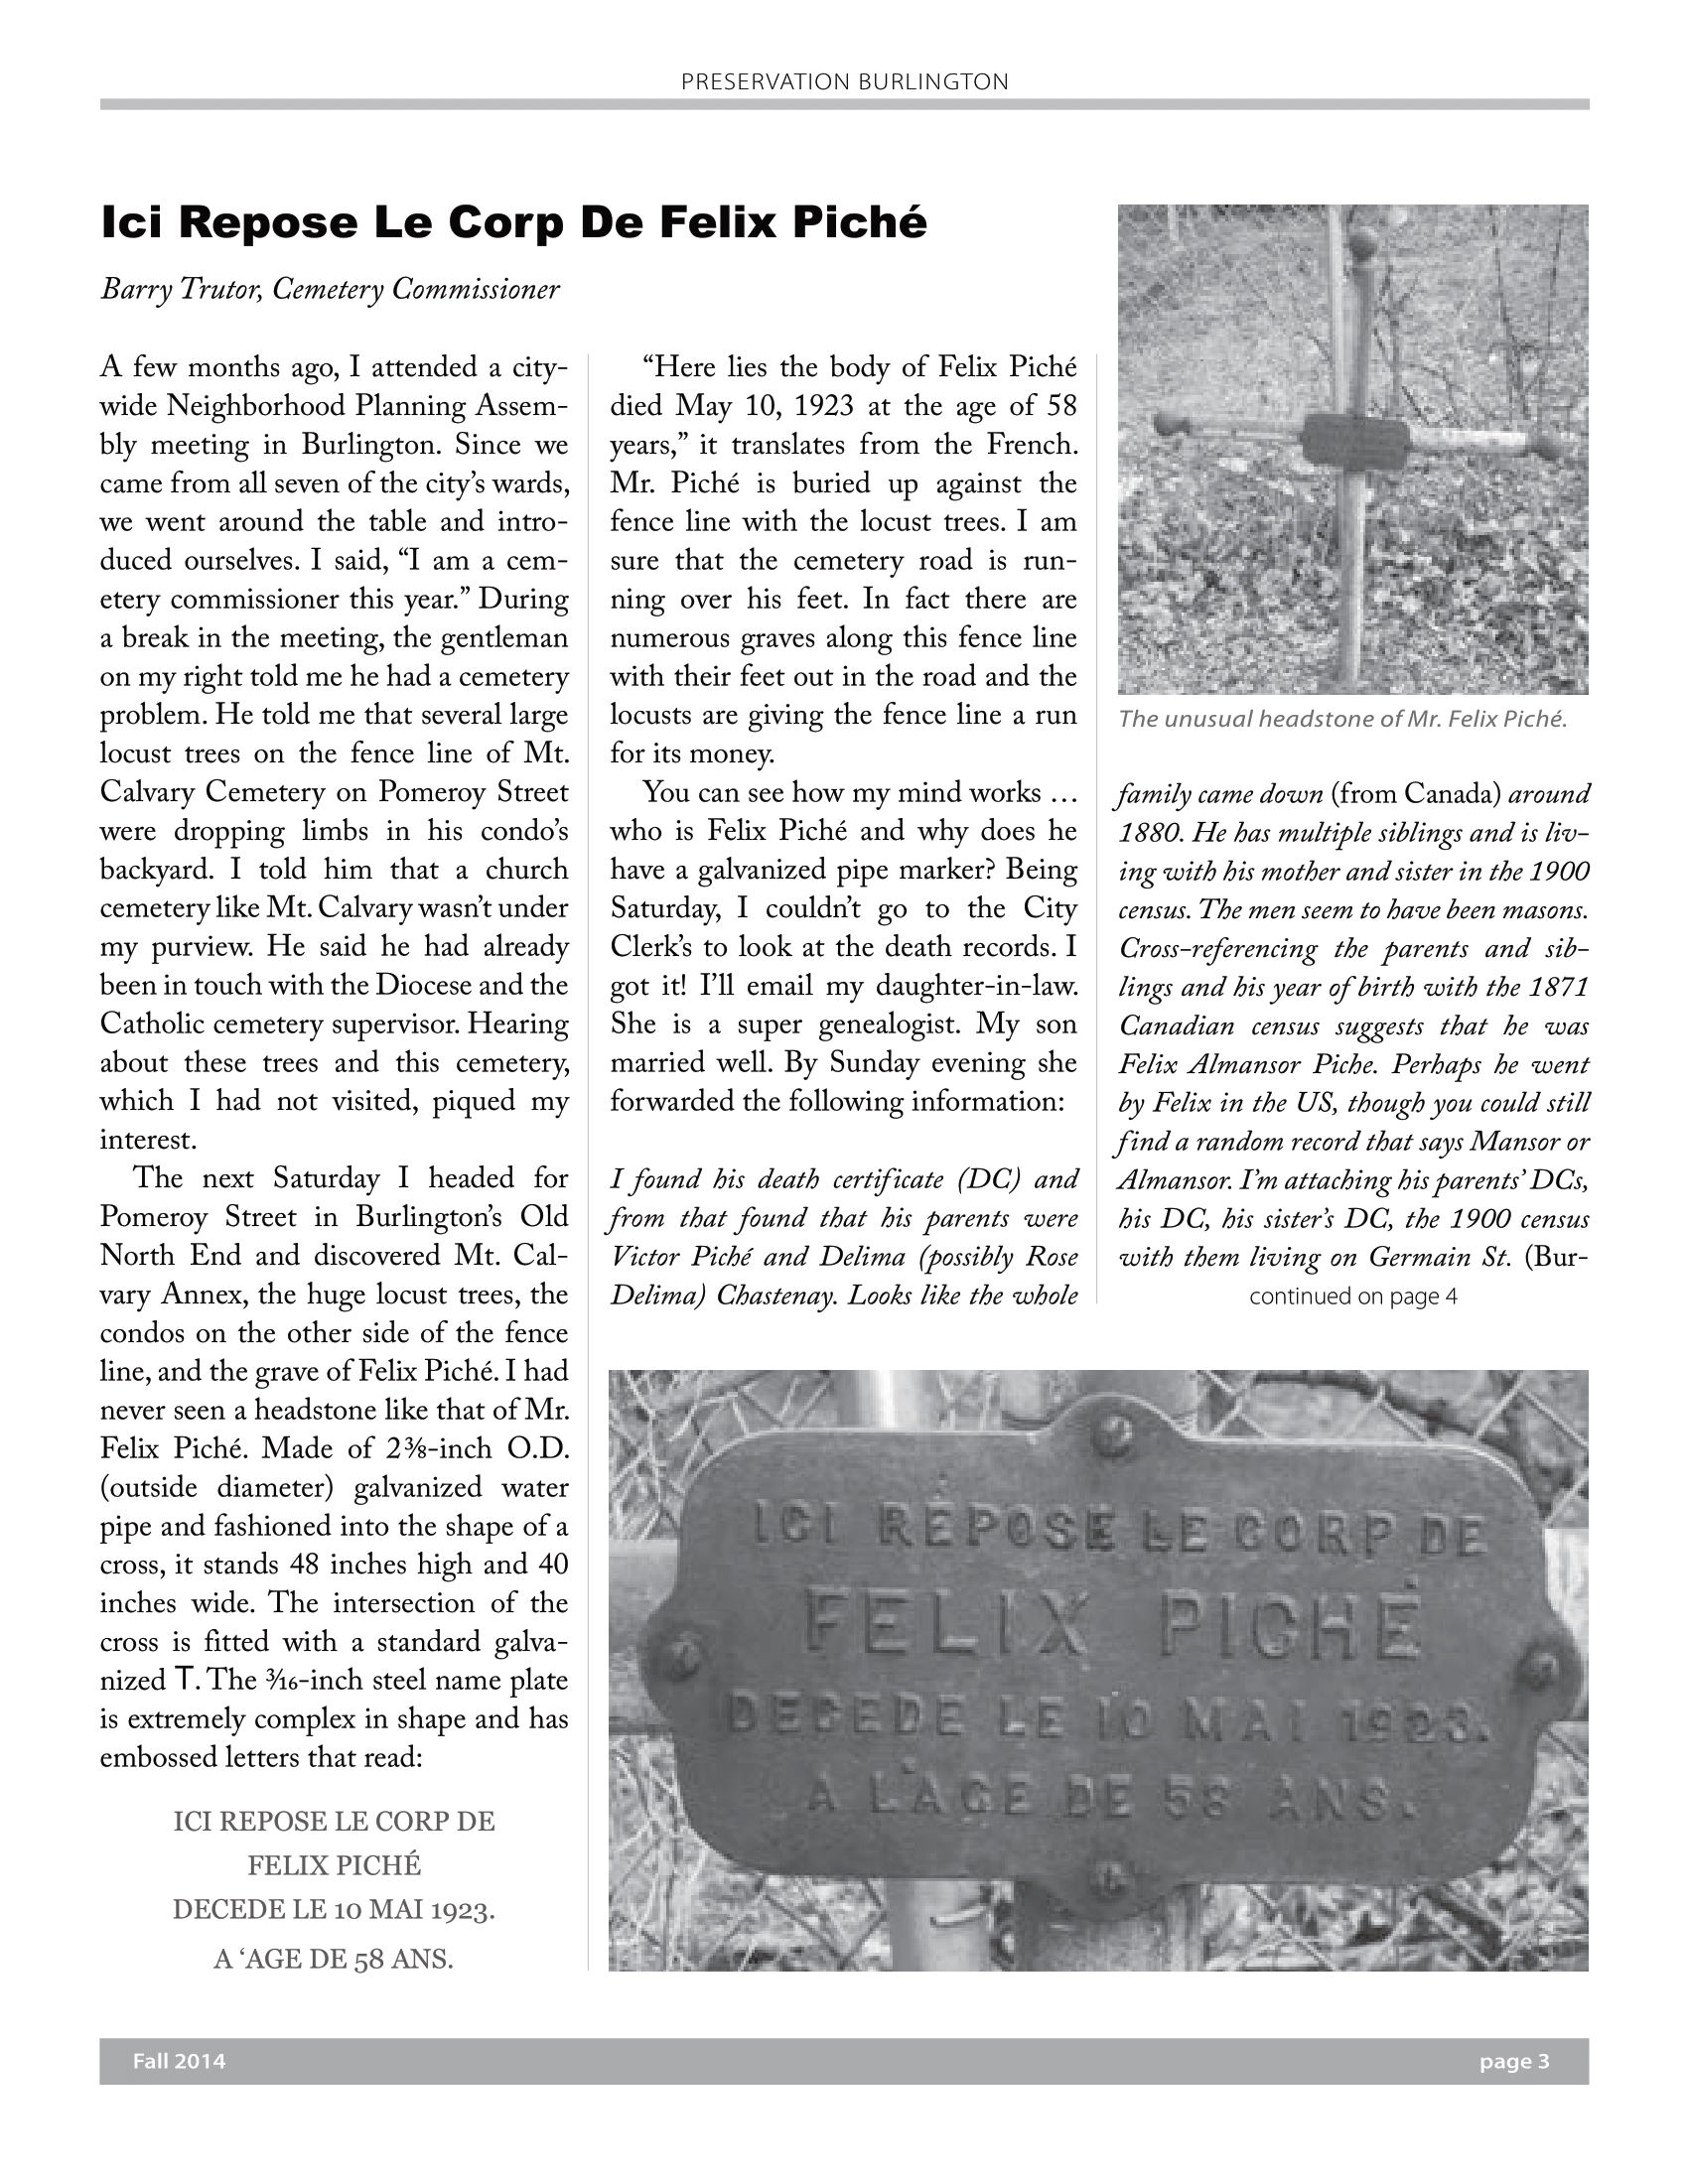 preservation-burlington-newsletter-fall-2014-3.png